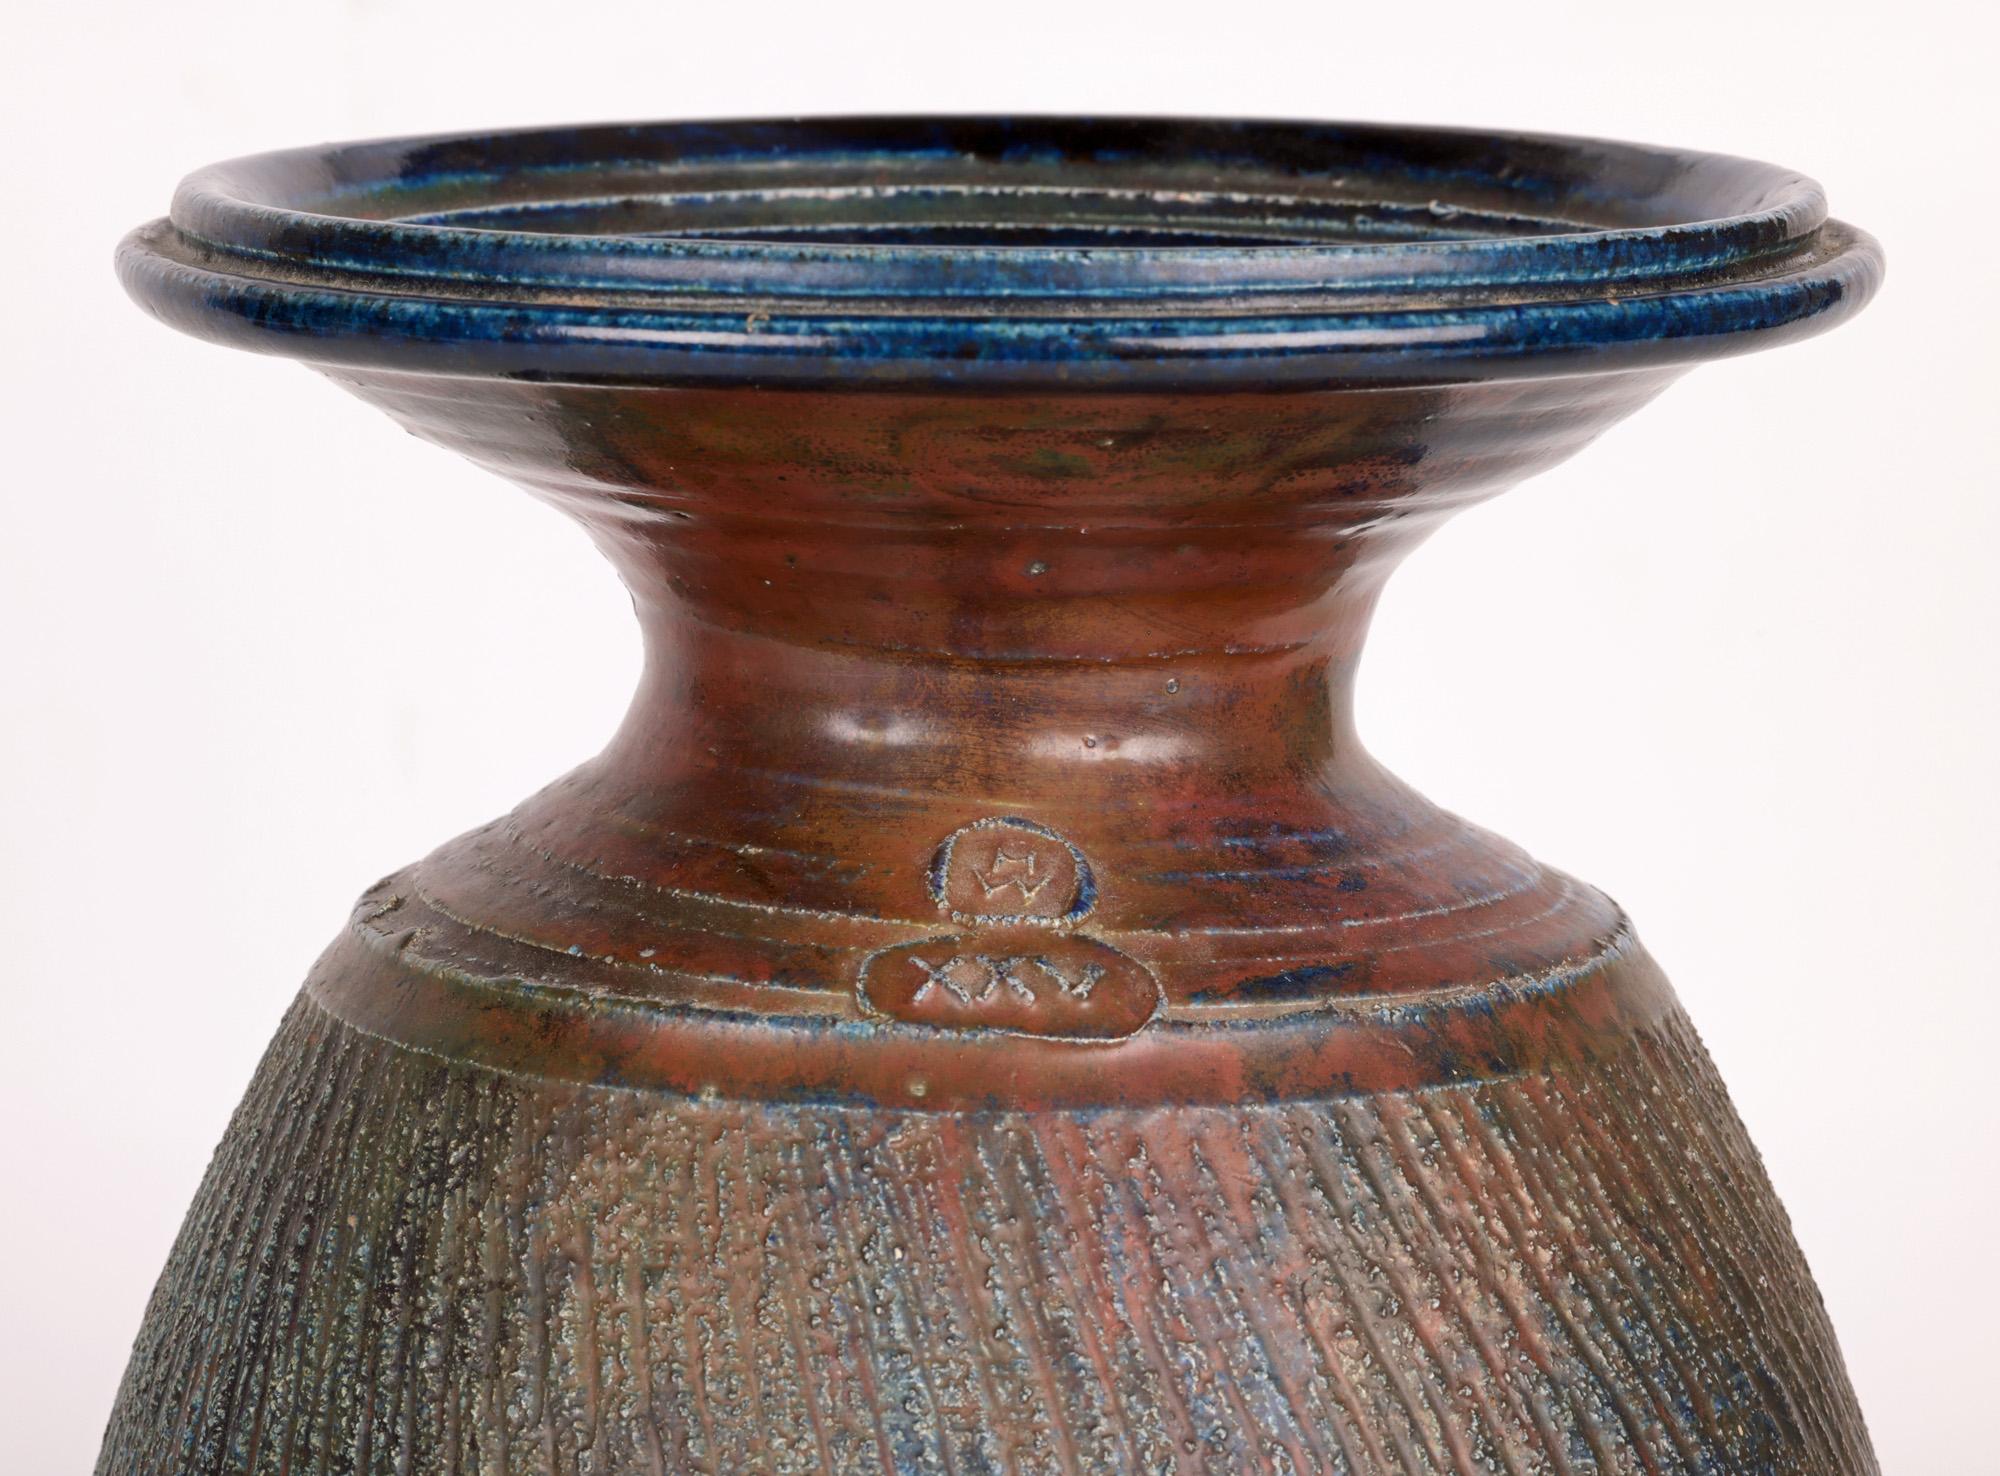 Exceptionnel, grand et impressionnant vase en émail raku de Carnon Downs Pottery avec des motifs nervurés, réalisé lors du 25e anniversaire par le célèbre potier Hughes West (britannique, né en 1950) et datant de 1996. Le grand vase de forme